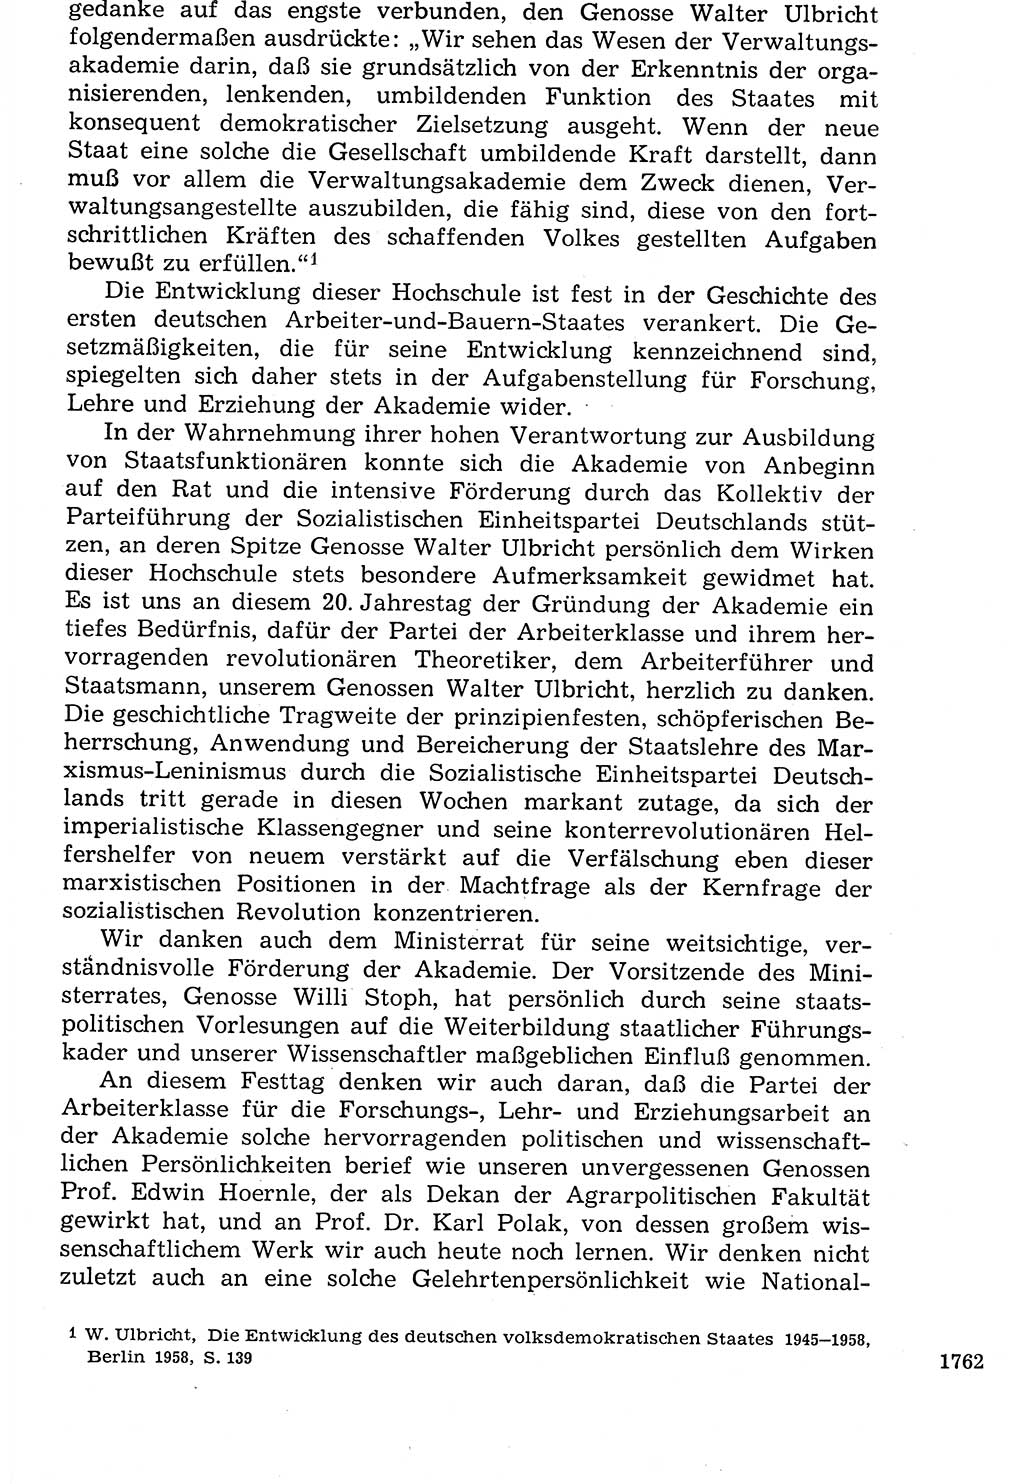 Staat und Recht (StuR), 17. Jahrgang [Deutsche Demokratische Republik (DDR)] 1968, Seite 1762 (StuR DDR 1968, S. 1762)